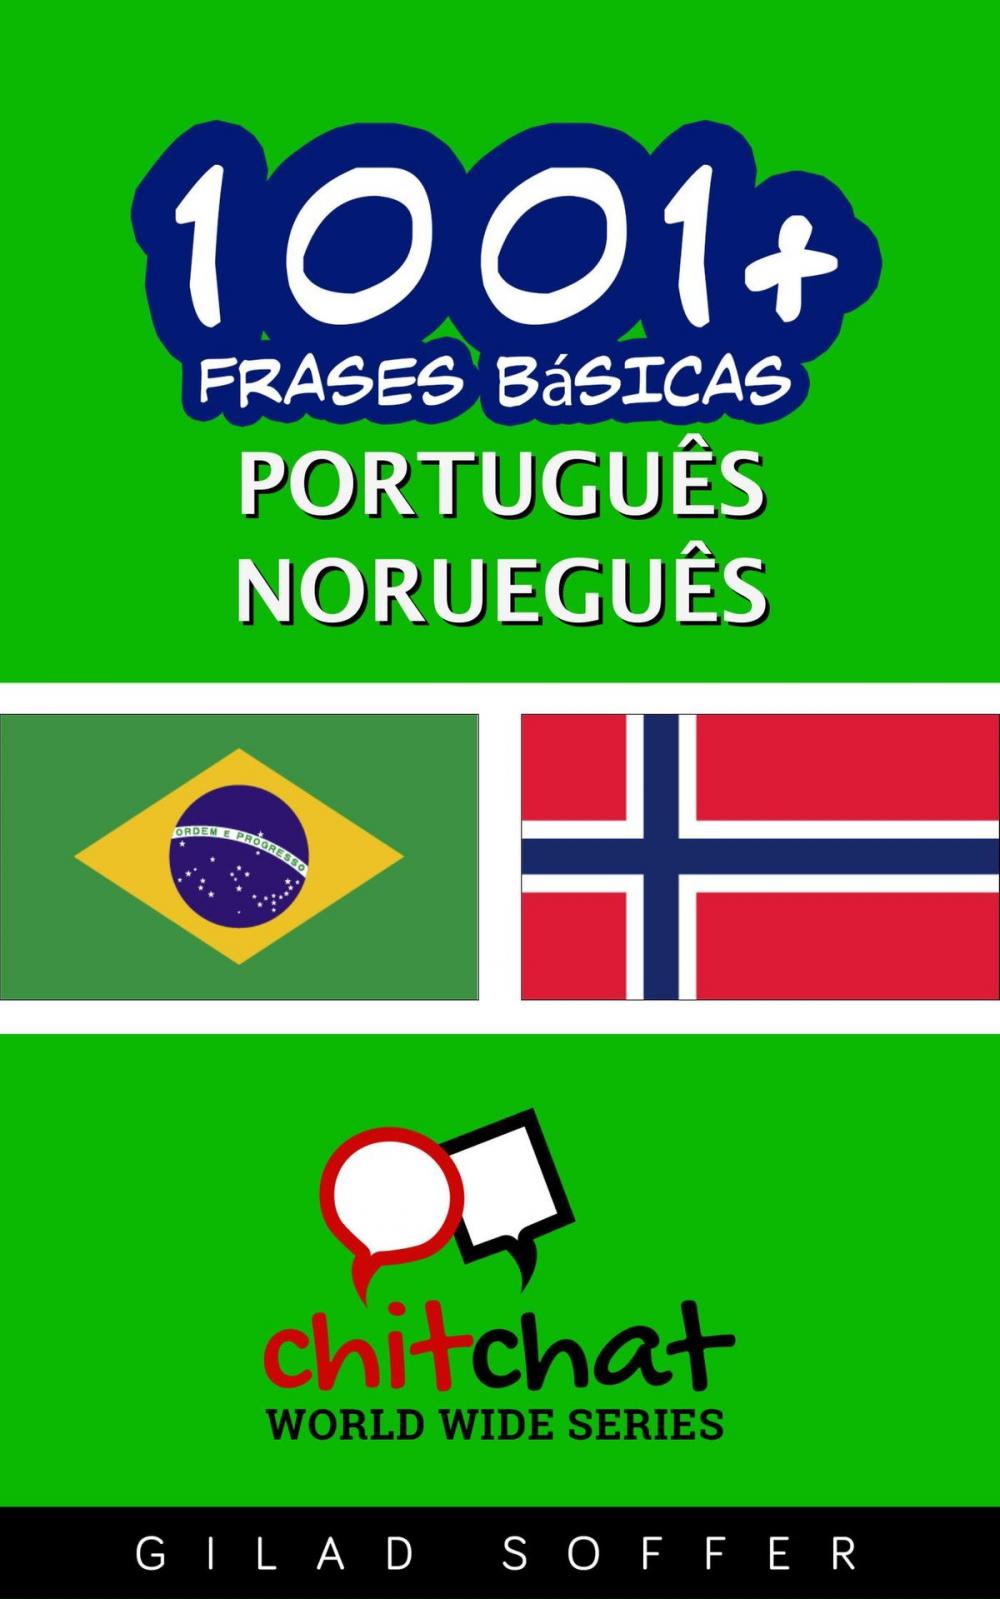 Big bigCover of 1001+ Frases Básicas Português - norueguês